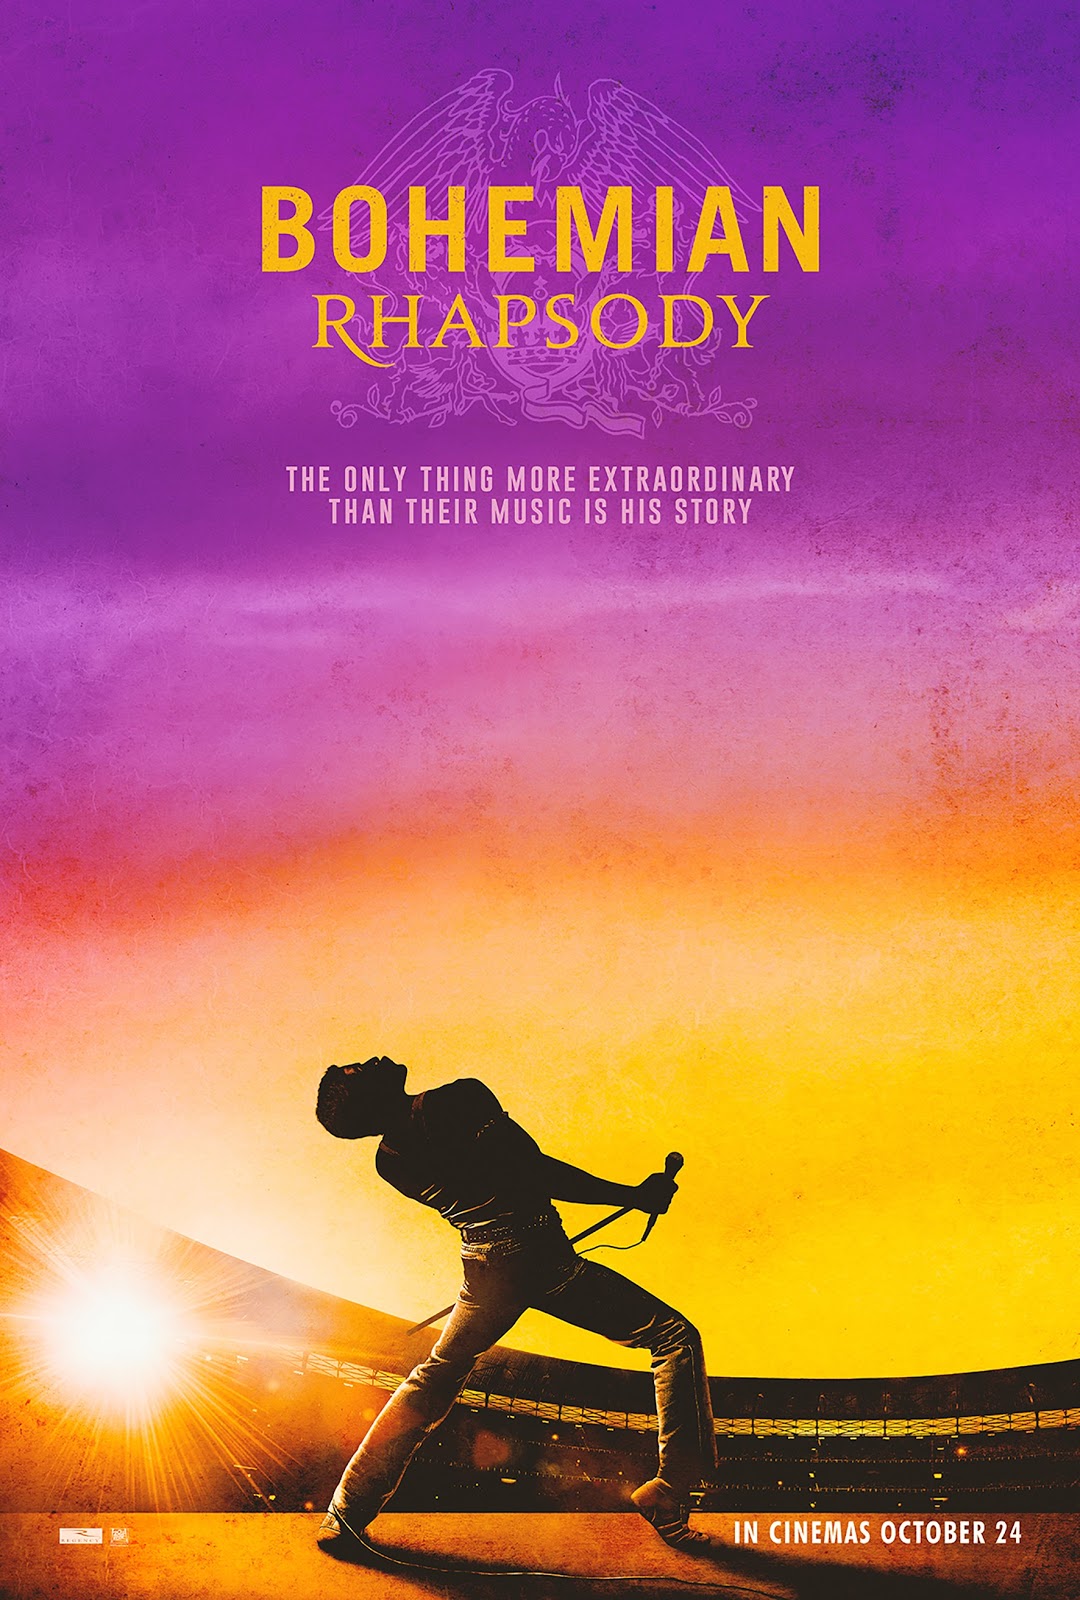 Bohemian Rhapsody Full Documentary 2018 Free Online